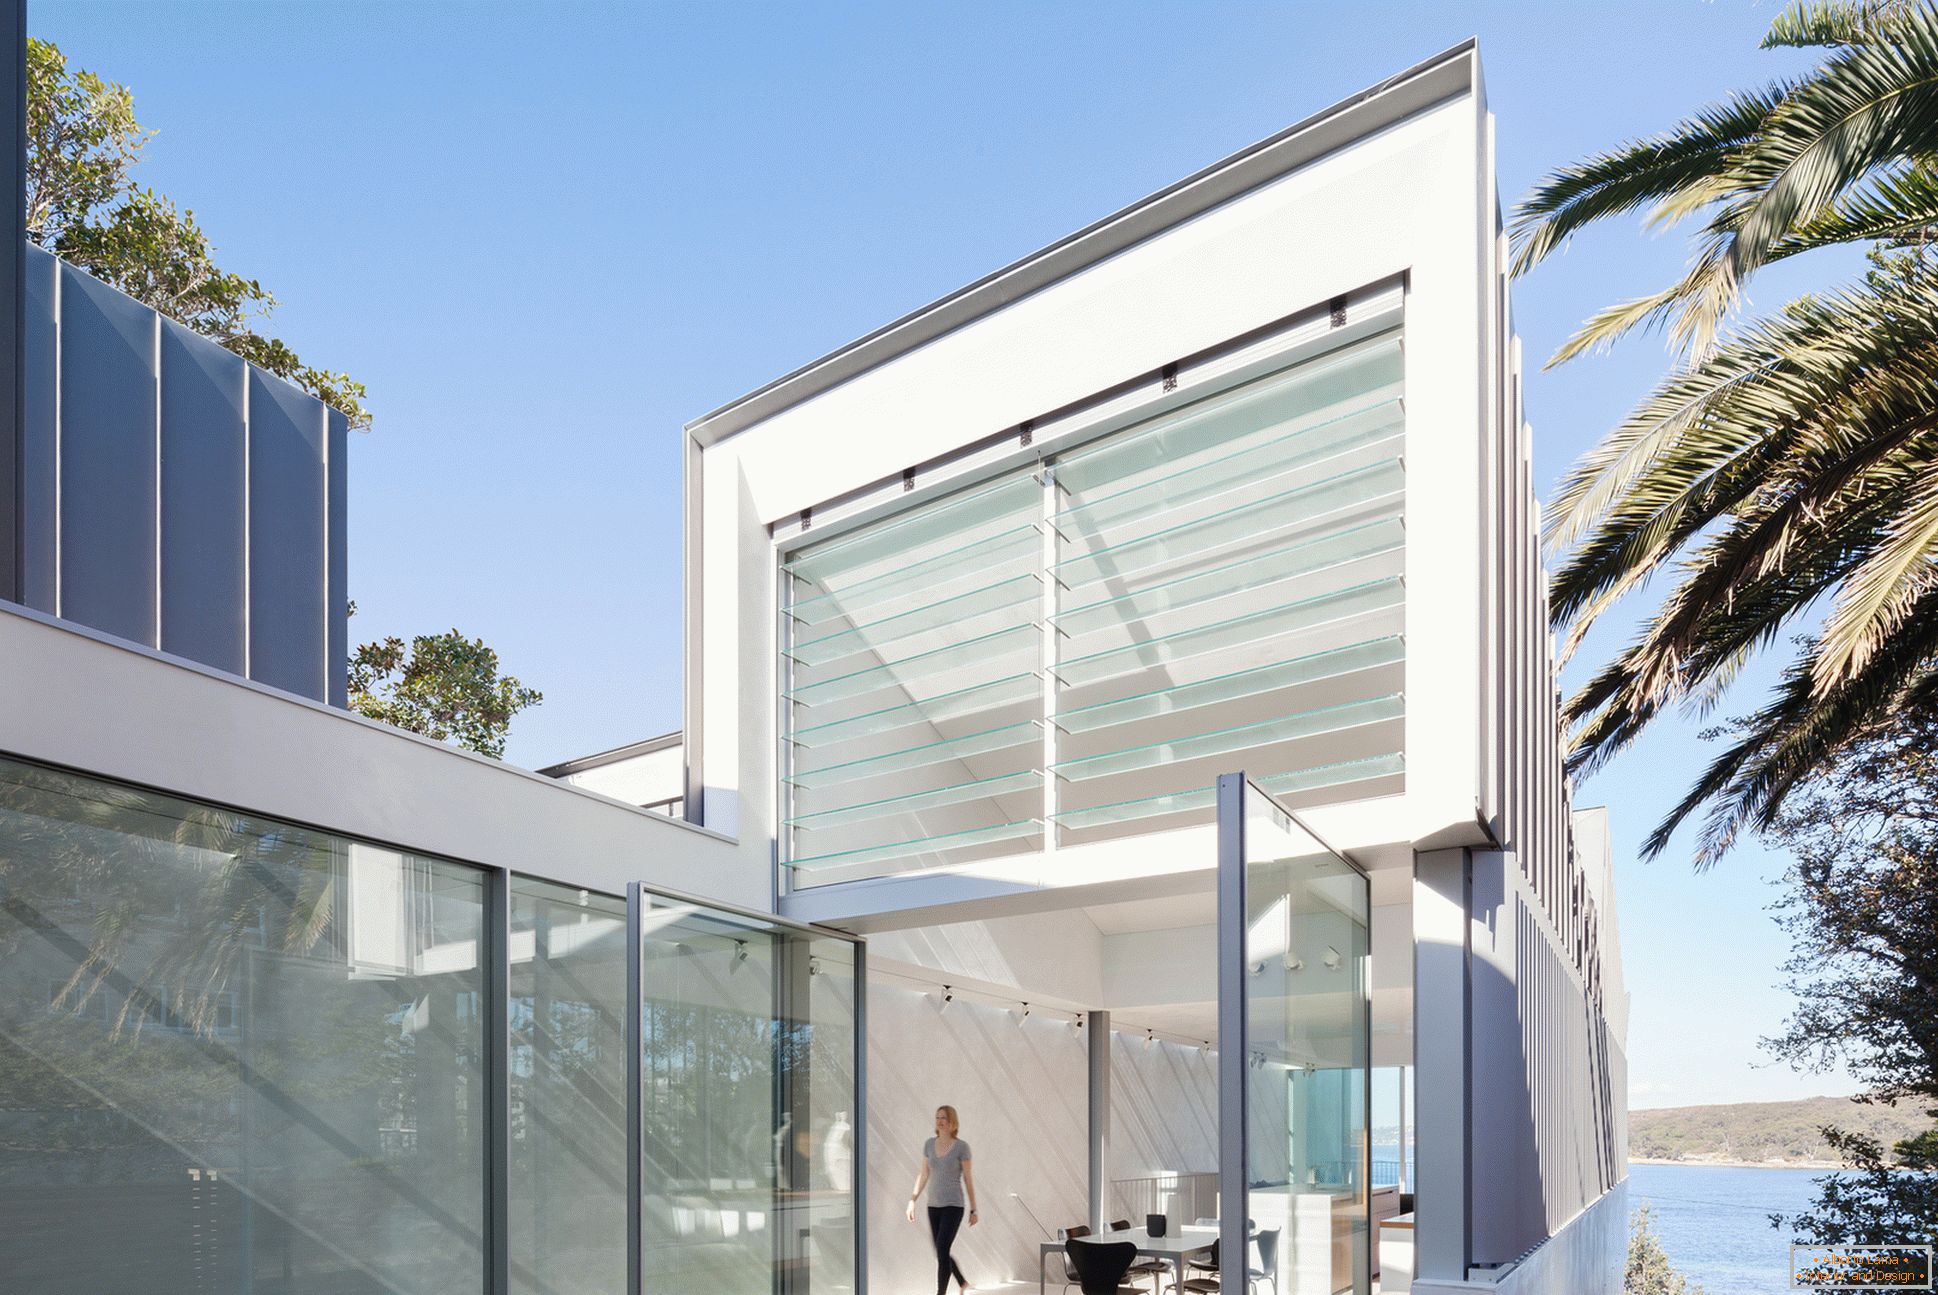 Projekt wąskiego dwupiętrowego domu w Australii